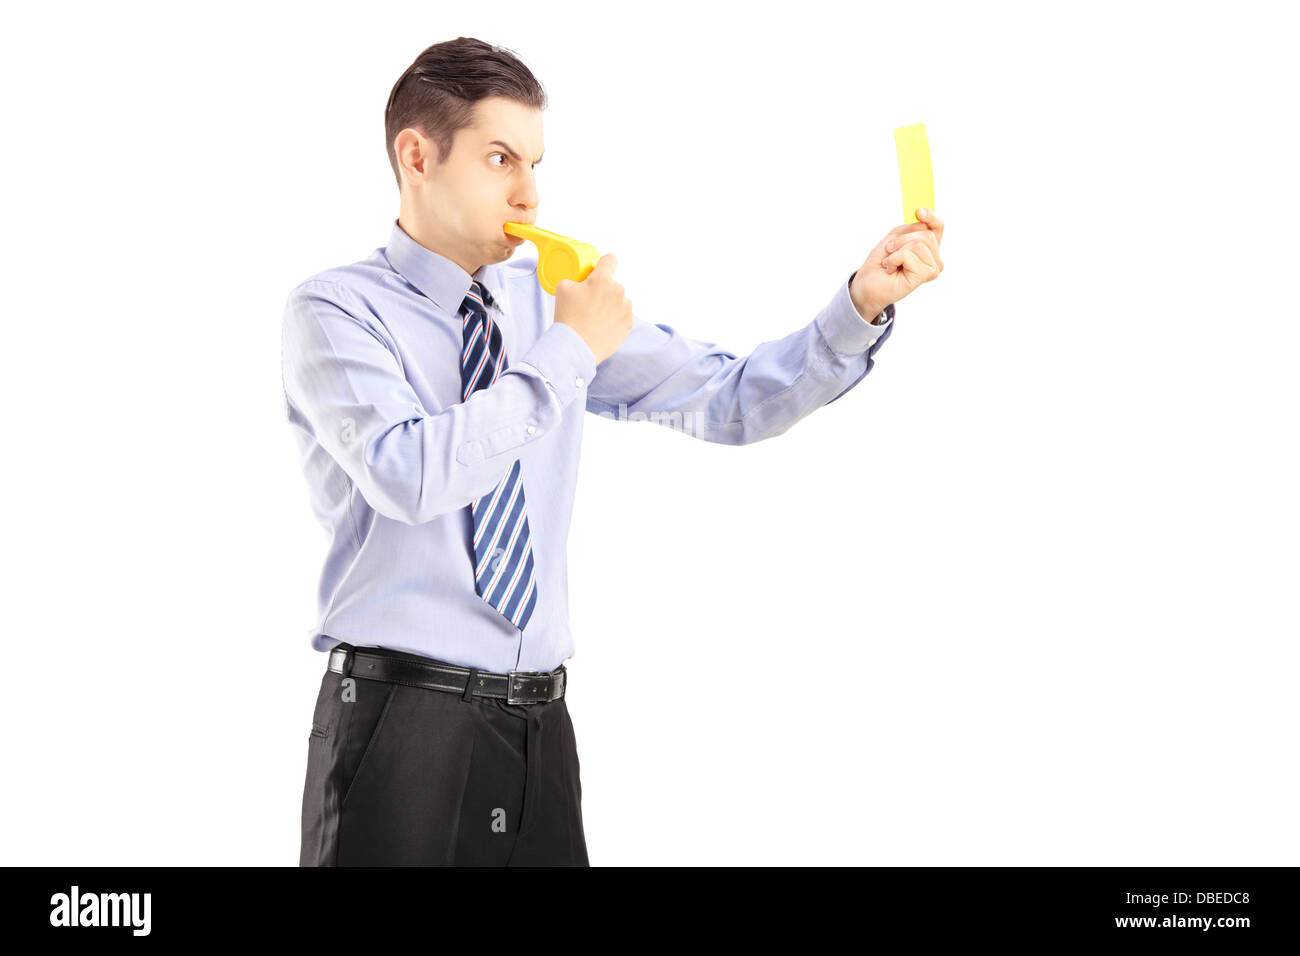 Jeune homme qui souffle dans un sifflet et montrant une carte jaune Banque D'Images